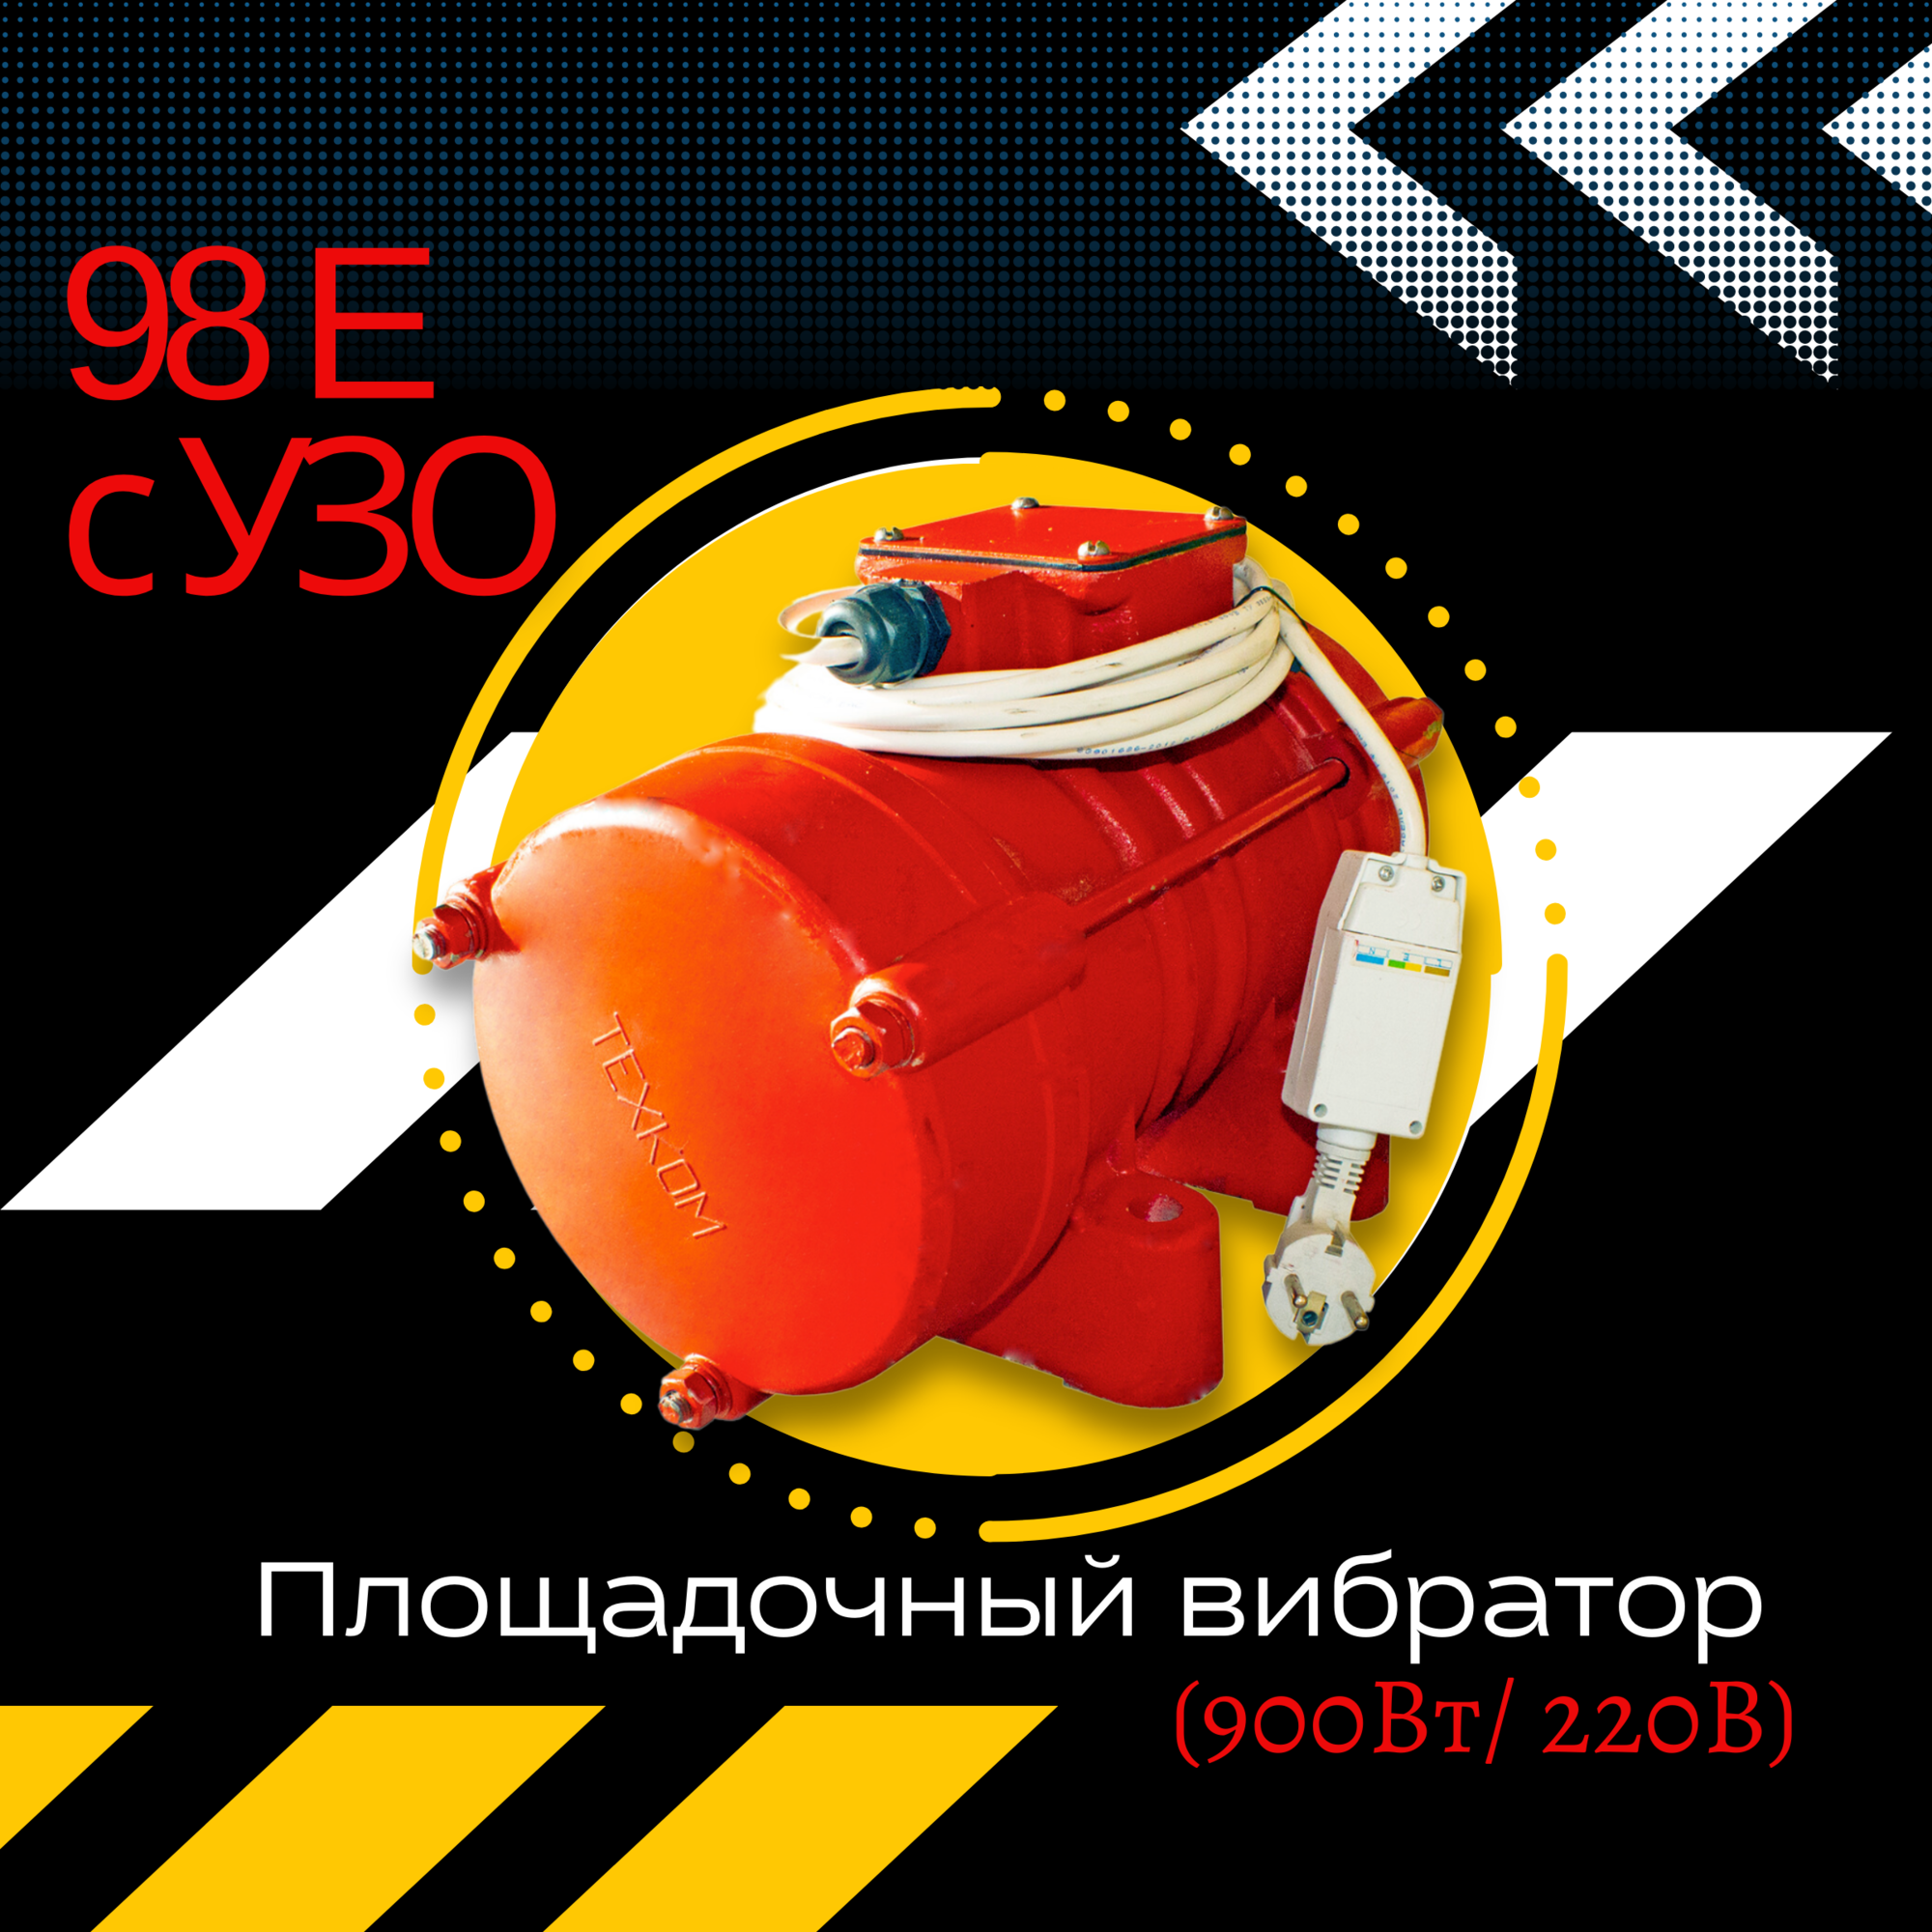 Площадочный вибратор TeaM ЭВ-98Е с УЗО (900Вт/ 220В)